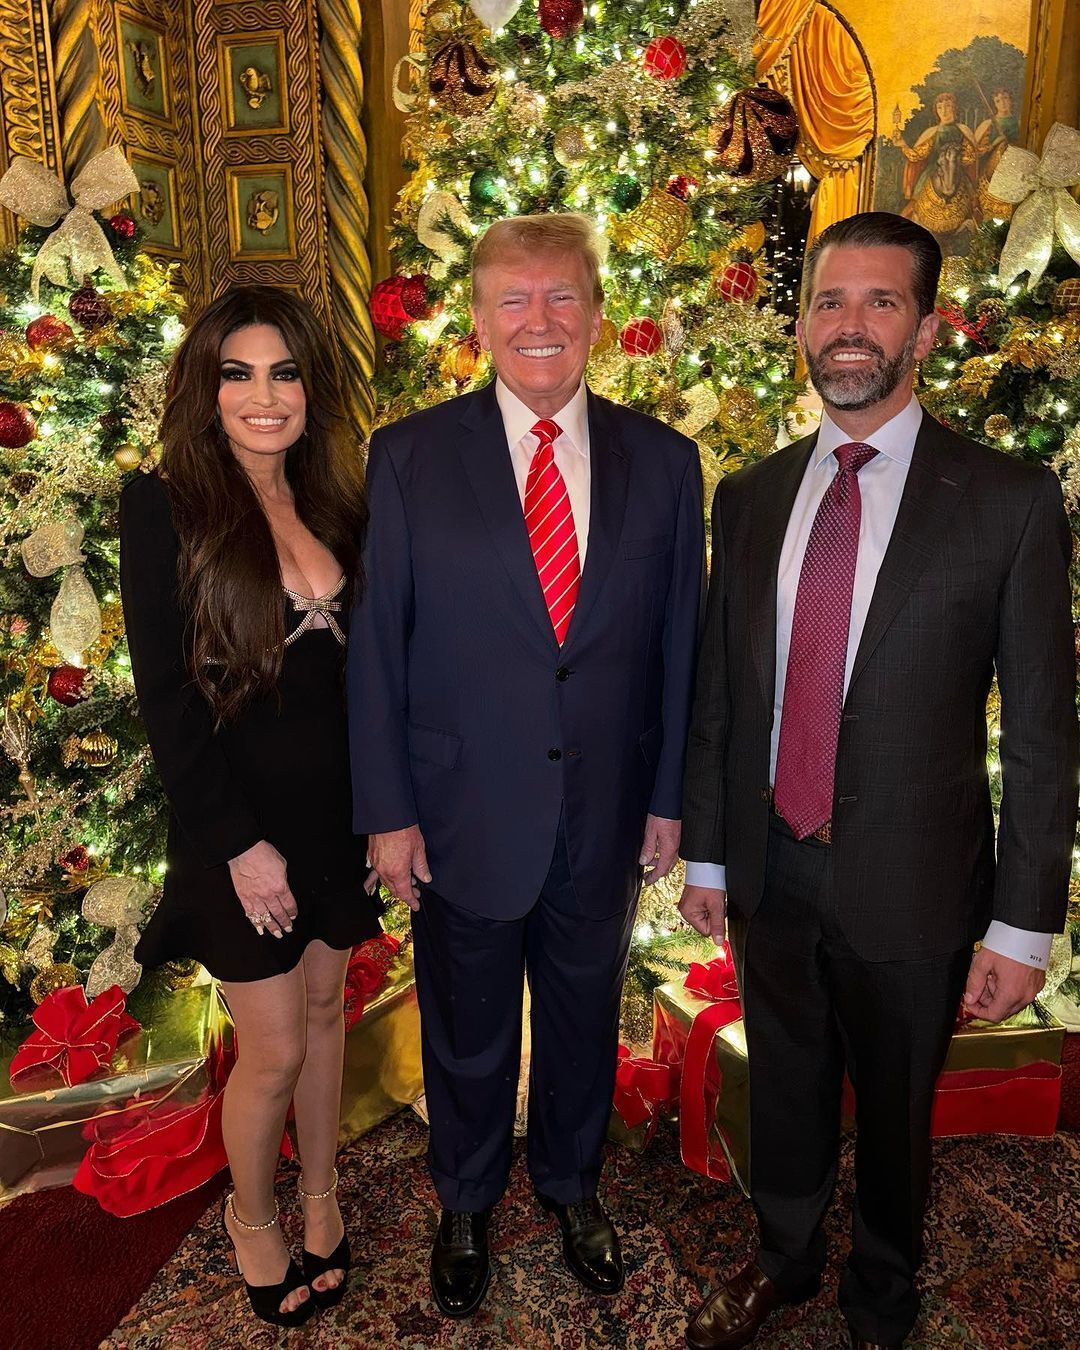 Де Меланія? Різдвяне фото великої родини Трампа спантеличило мережу